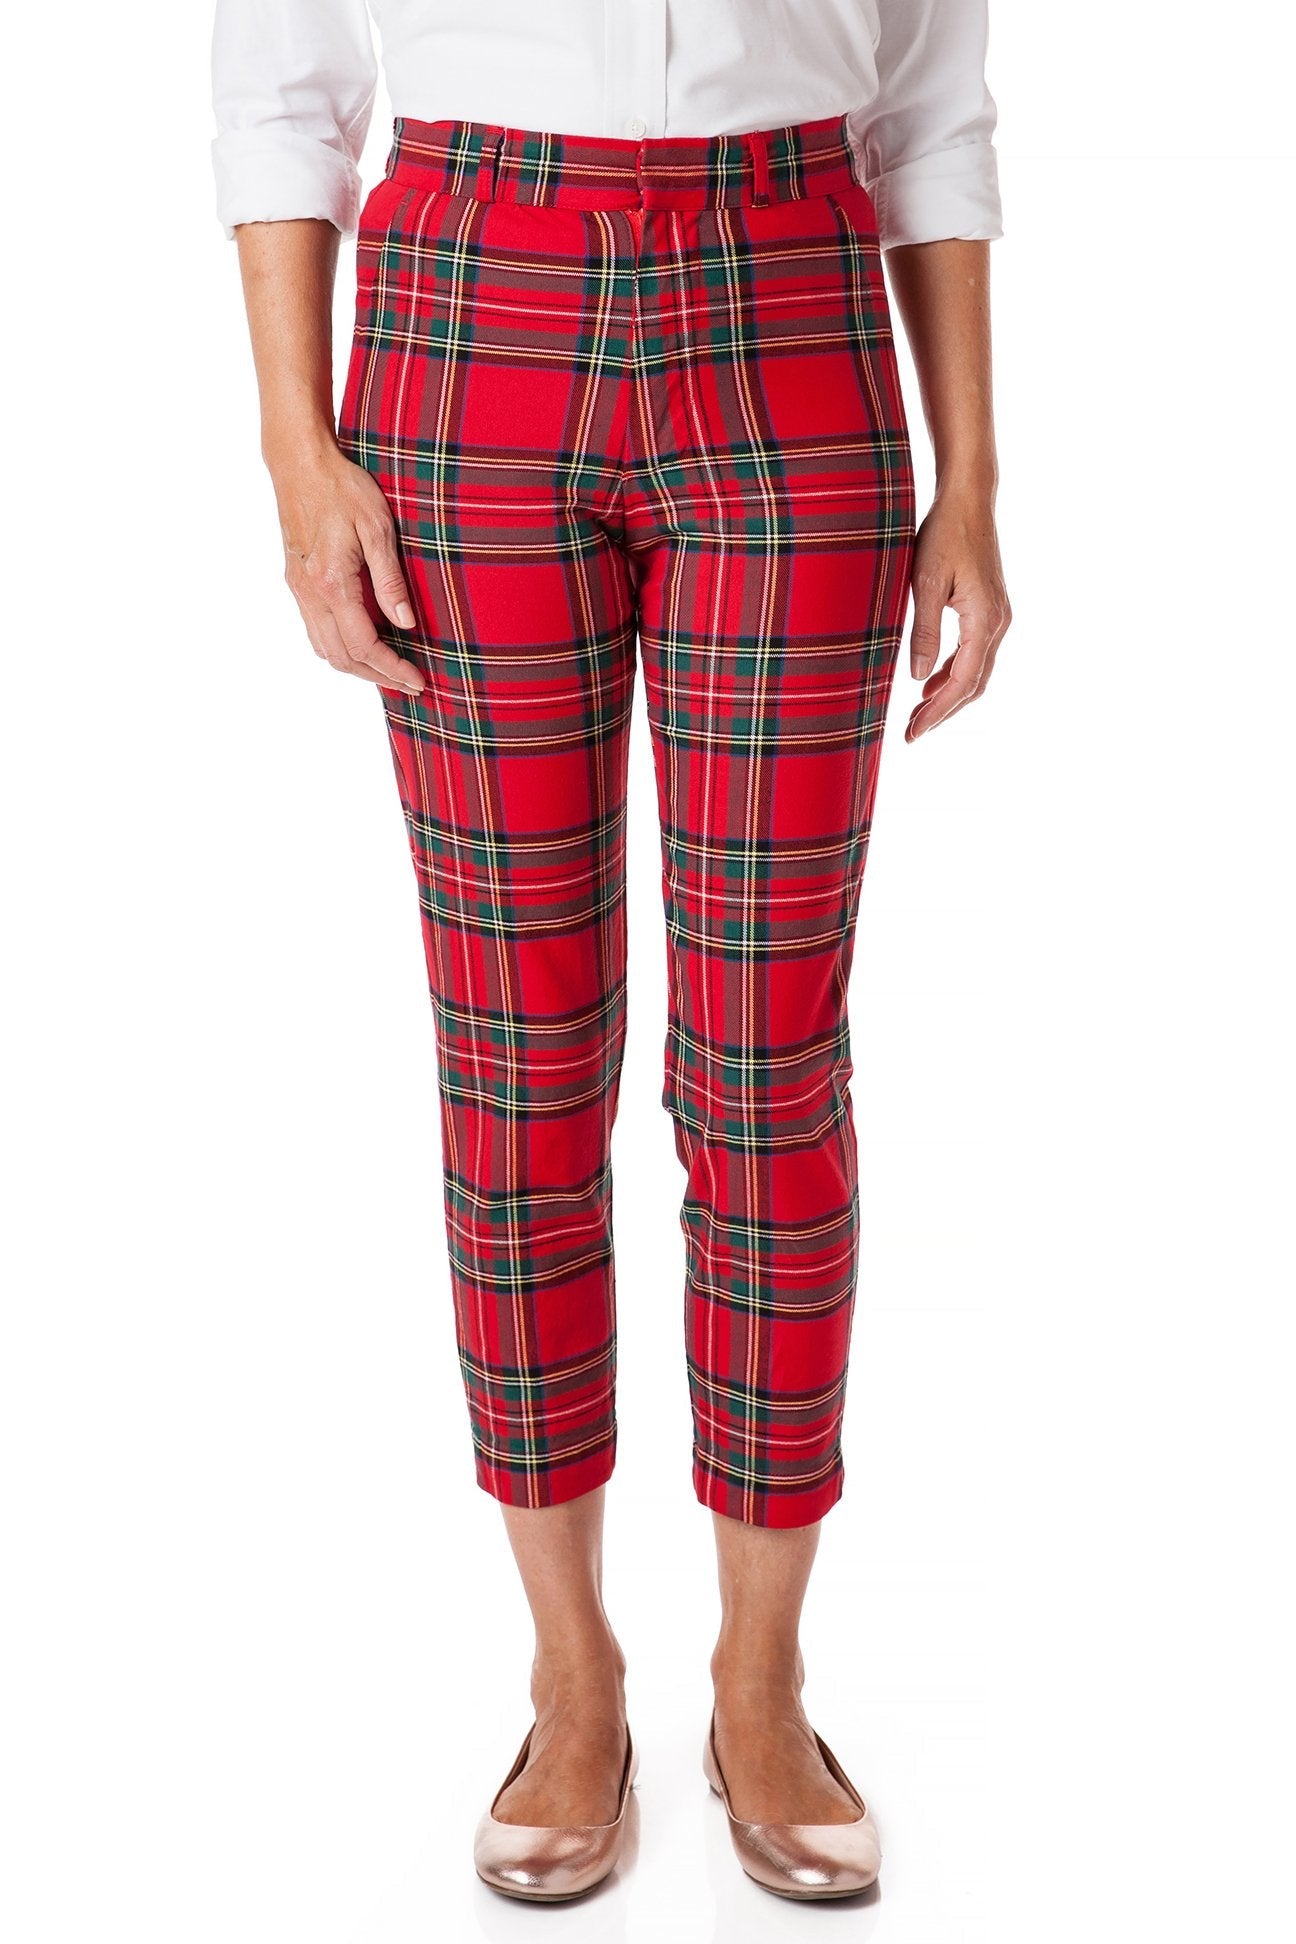 Twill Pajama Pants - Red/plaid - Ladies